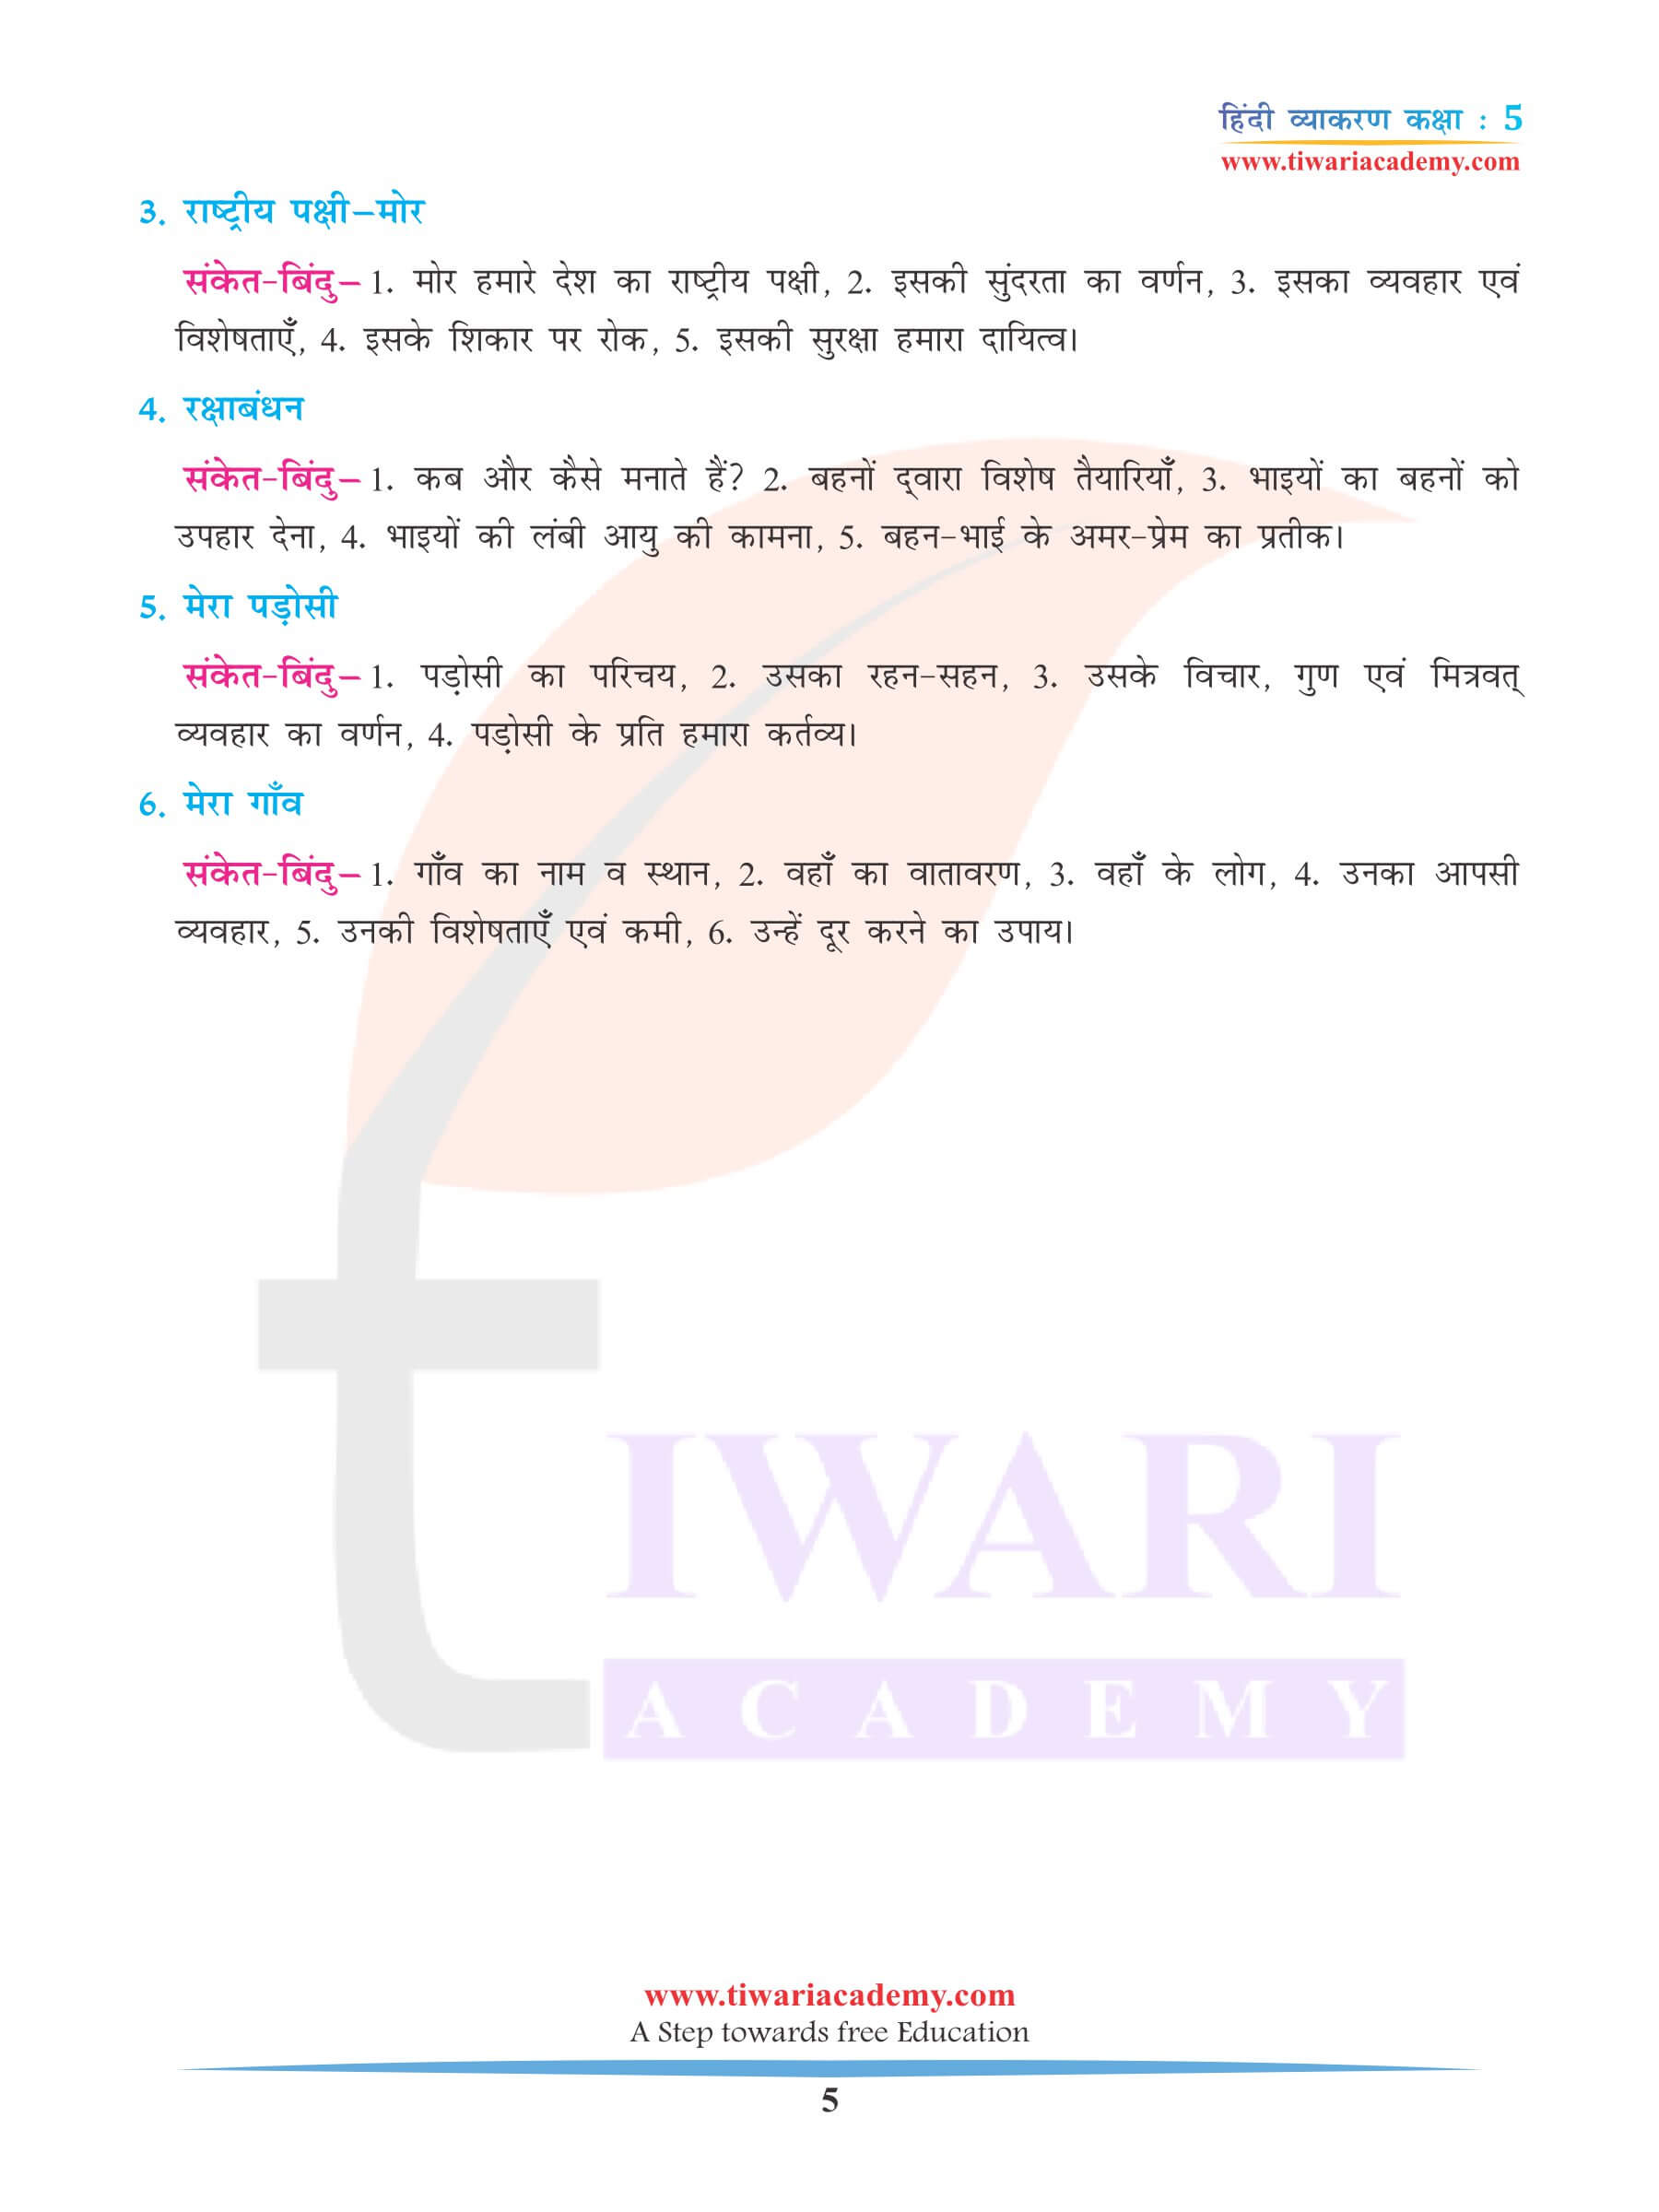 कक्षा 5 हिंदी व्याकरण अध्याय 21 अनुच्छेद लेखन प्रश्न उत्तर